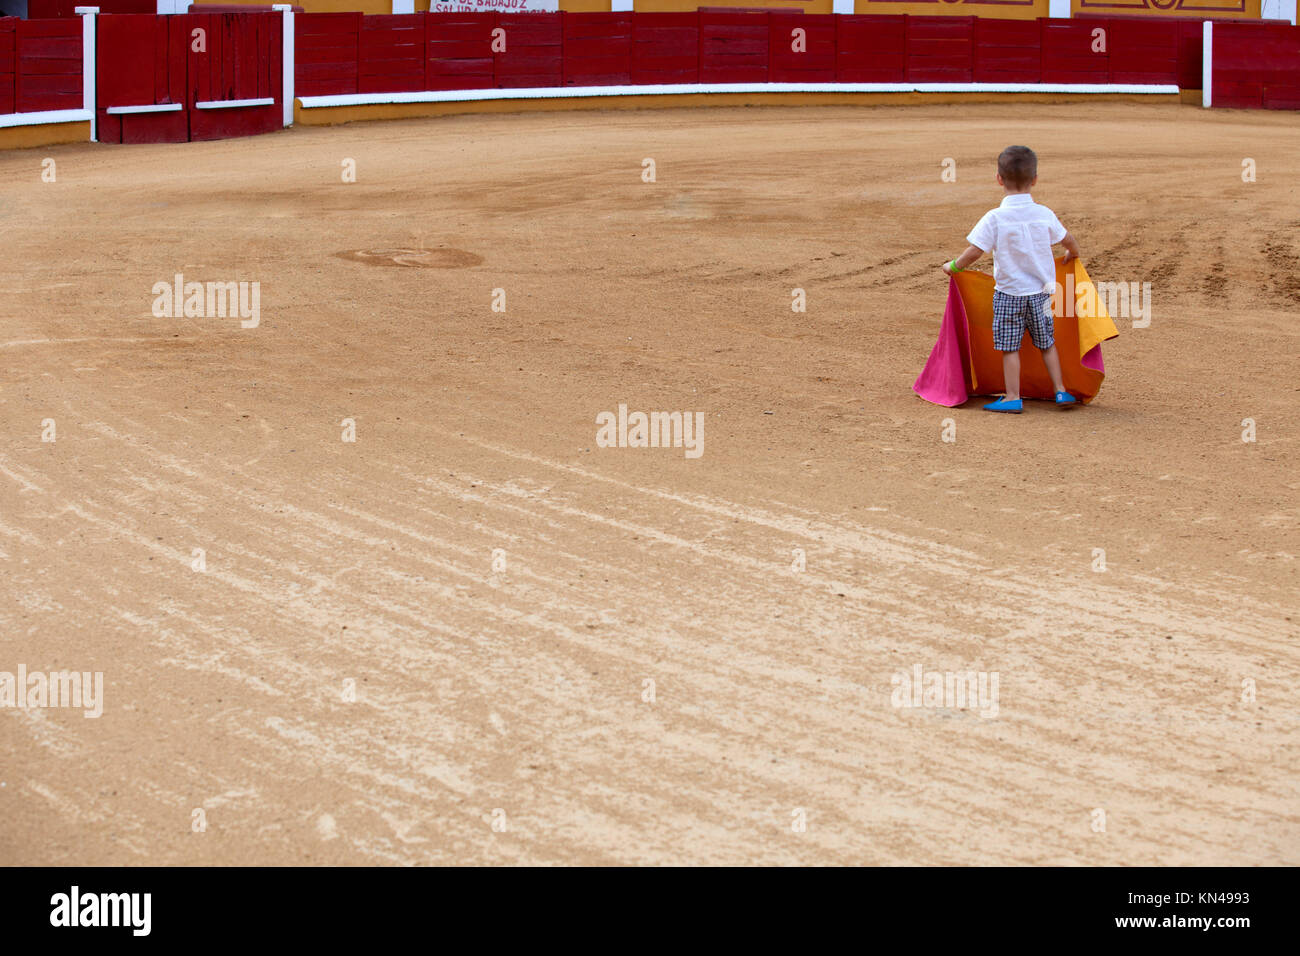 Enfant non identifié sur arena prétendant effectue une corrida, Badajoz, Espagne. Banque D'Images